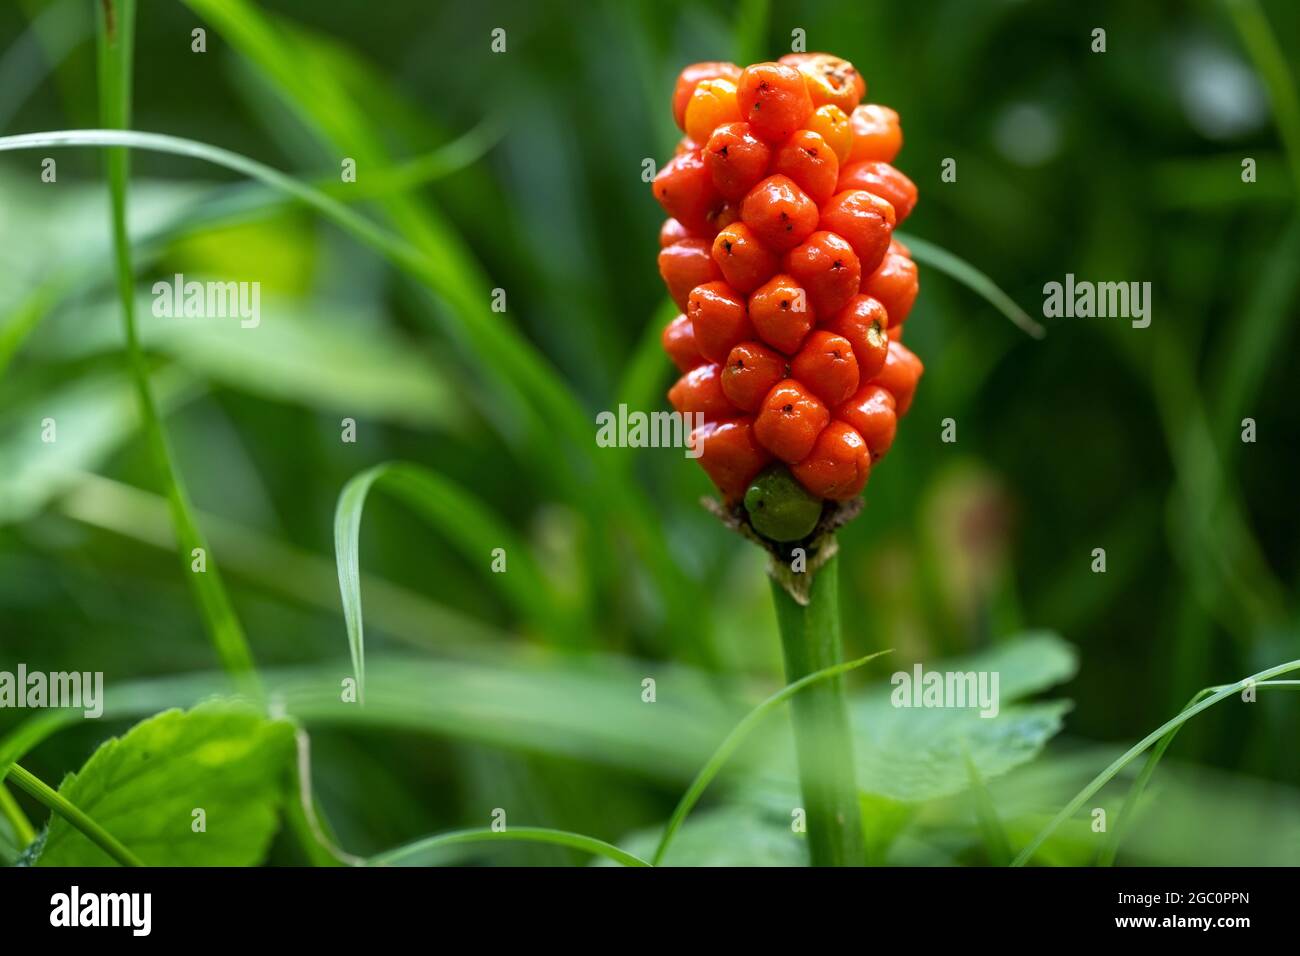 Arum maculatum avec des baies rouges sur fond vert, une plante forestière toxique aussi appelée Cuckoo pint ou Lords and Ladies, Copy space, selecte Banque D'Images